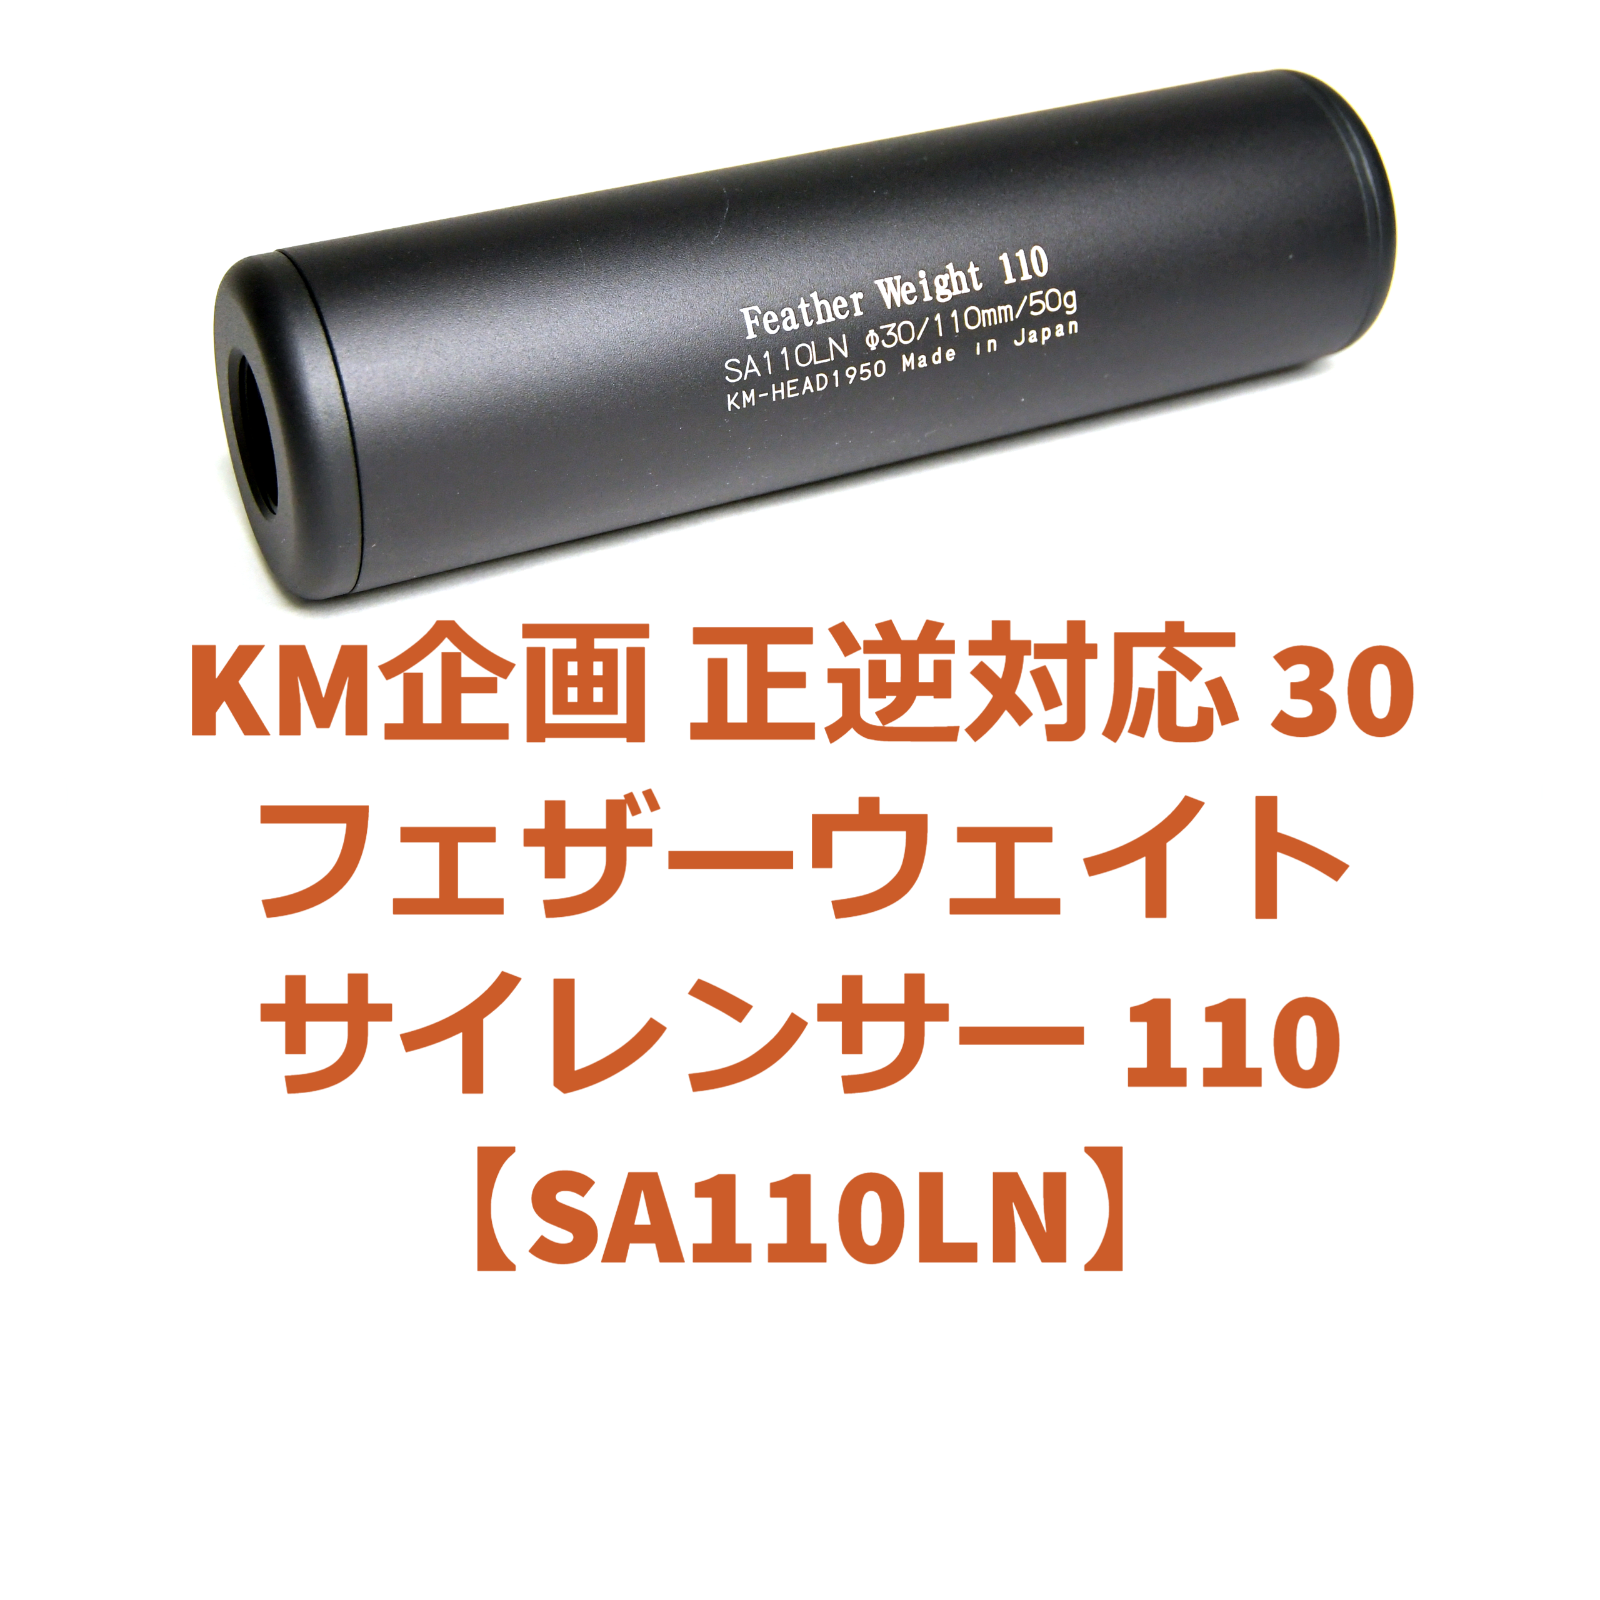 翌日発送可能】 KM企画 正逆対応 30フェザーウェイトサイレンサー 110 SA110L 各種ハンドガンに最適